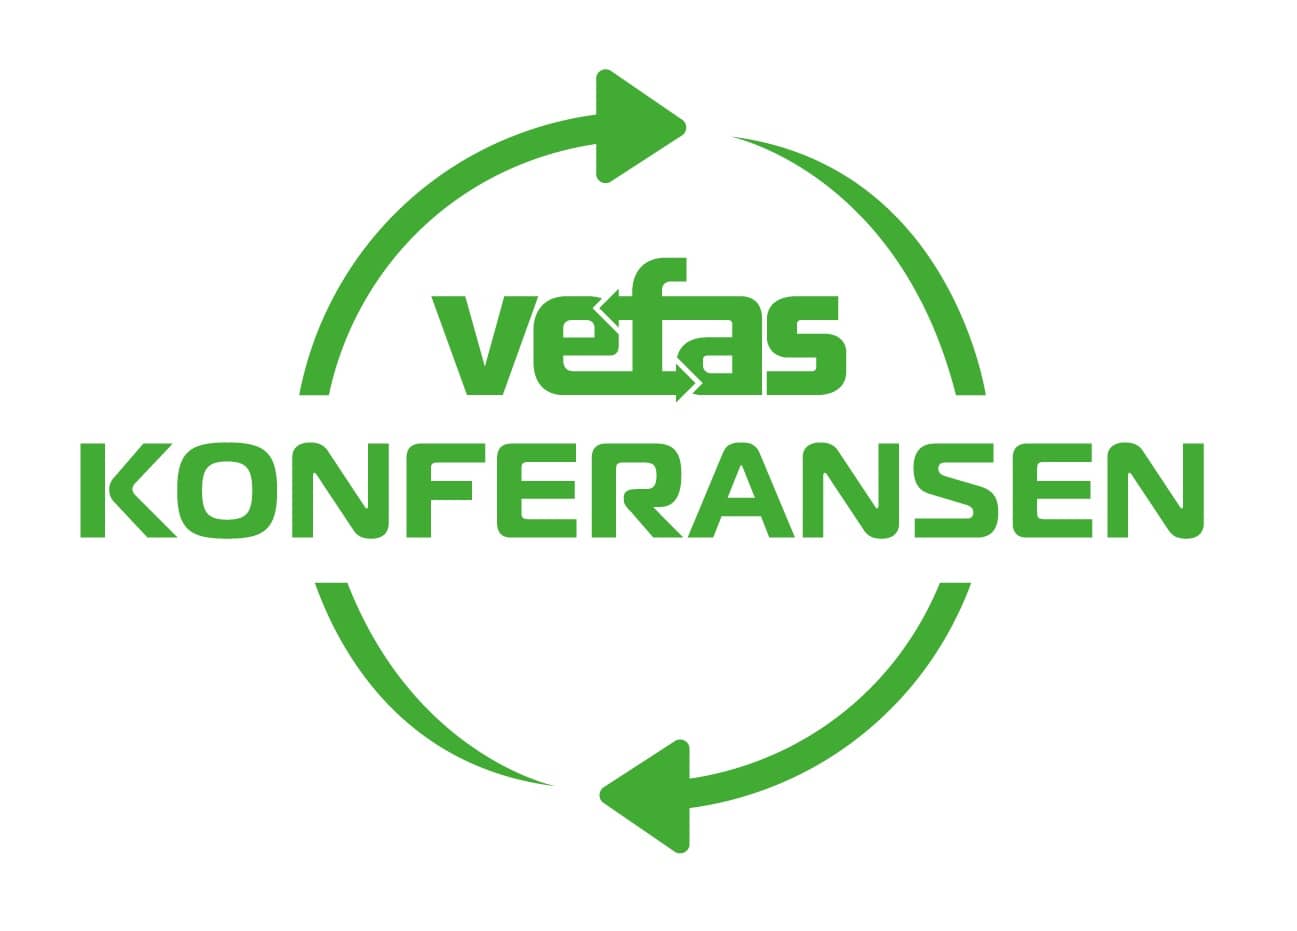 Vefas konferansen logo